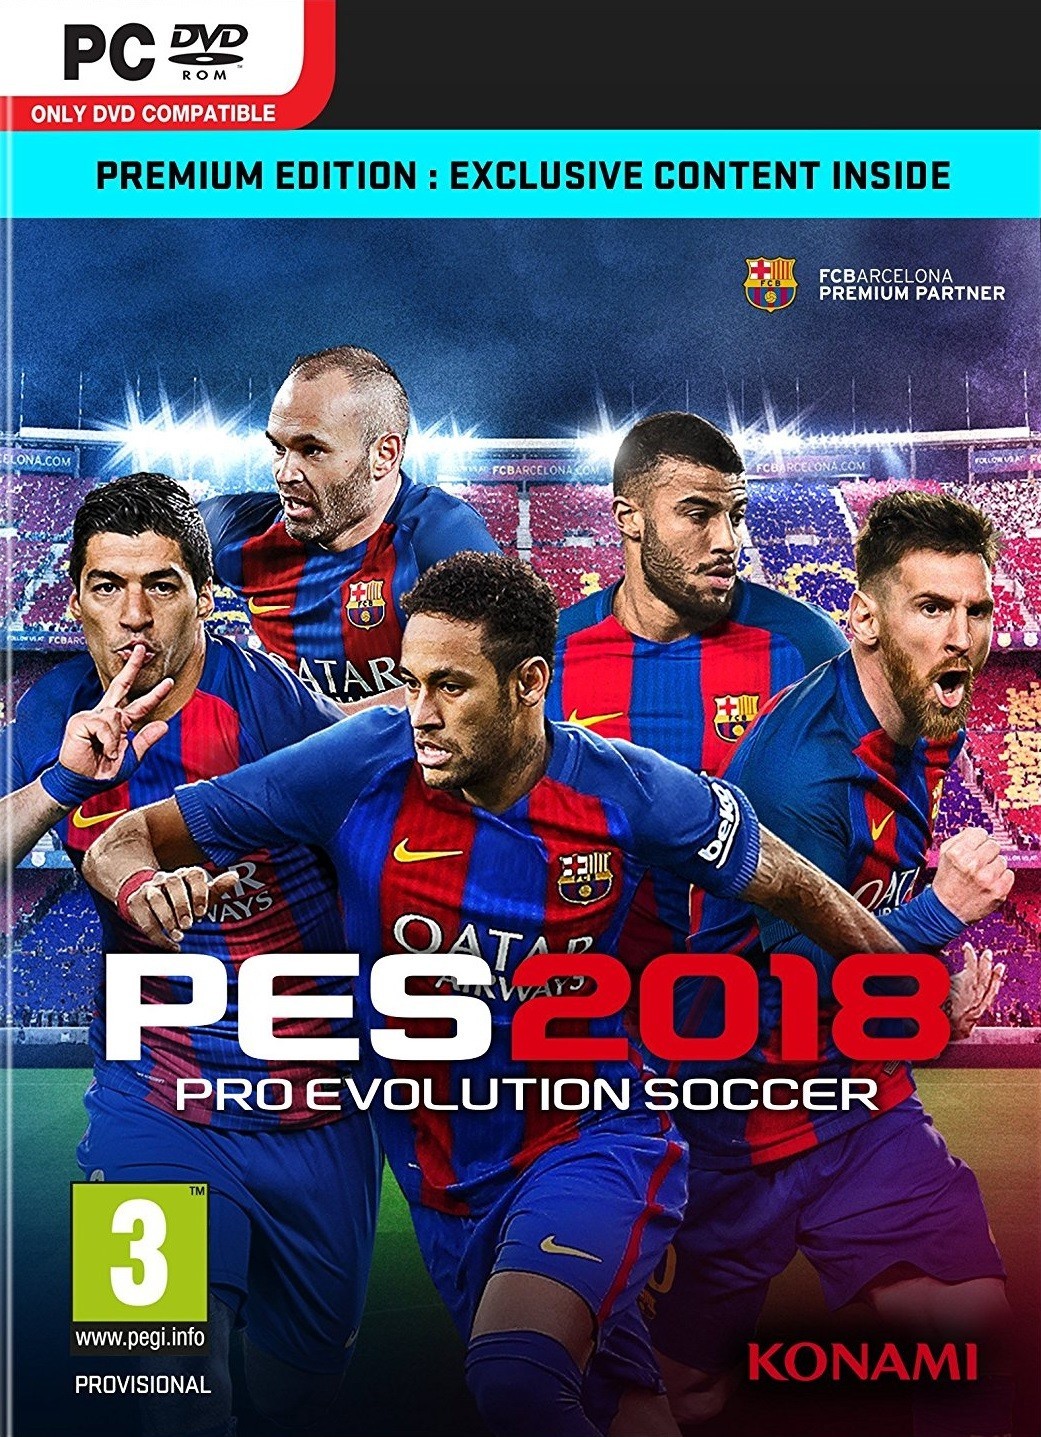 Pro Evolution Soccer 2018 (PC), Konami